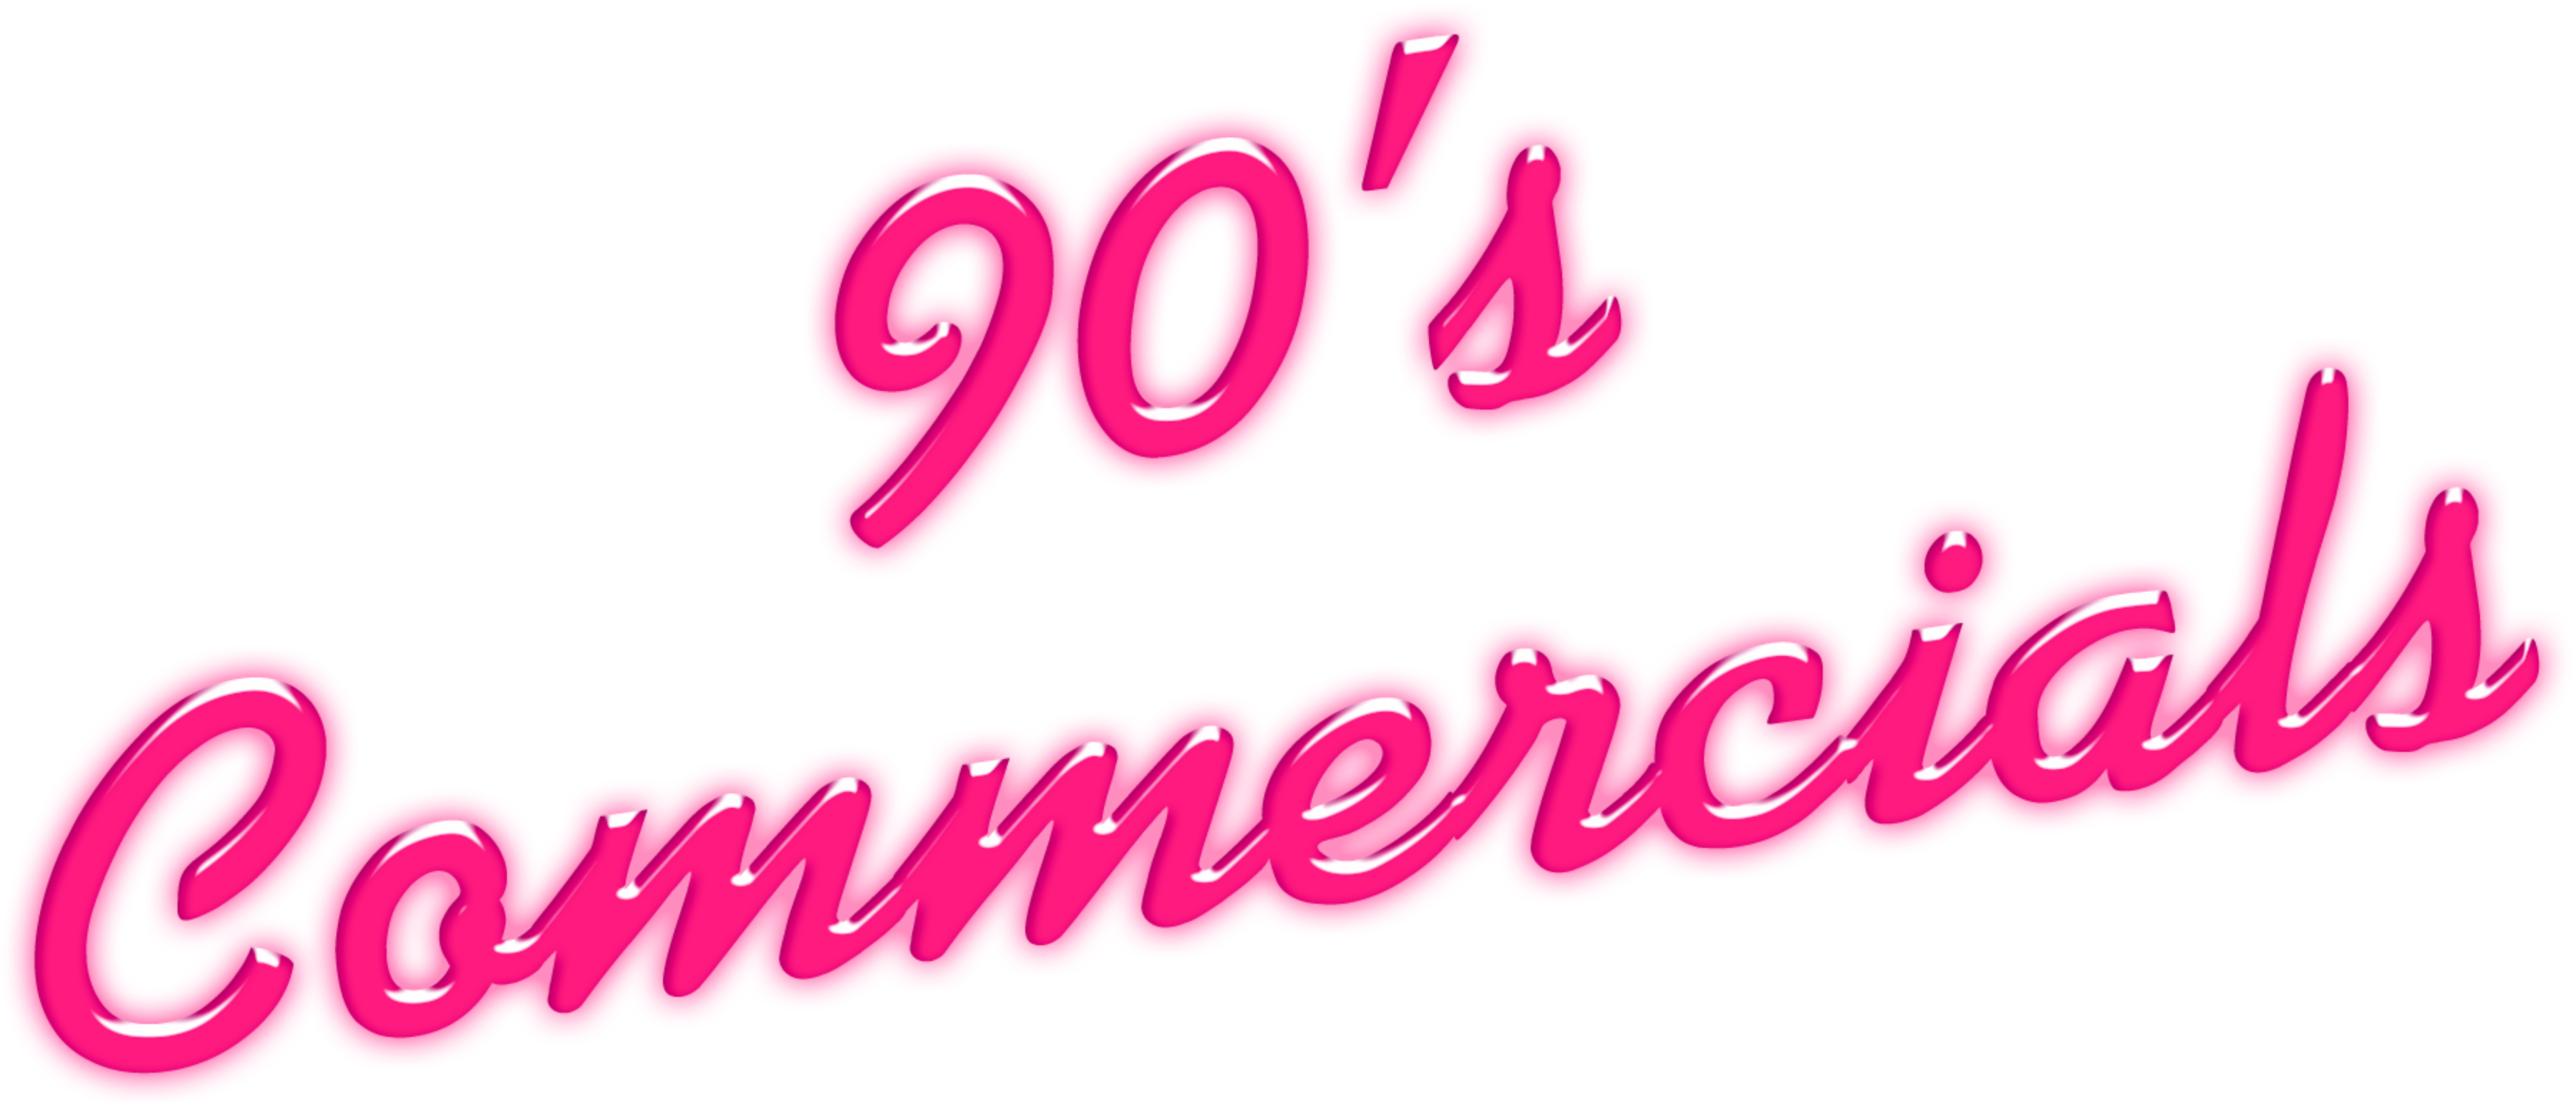 90's Commercials Disc 10